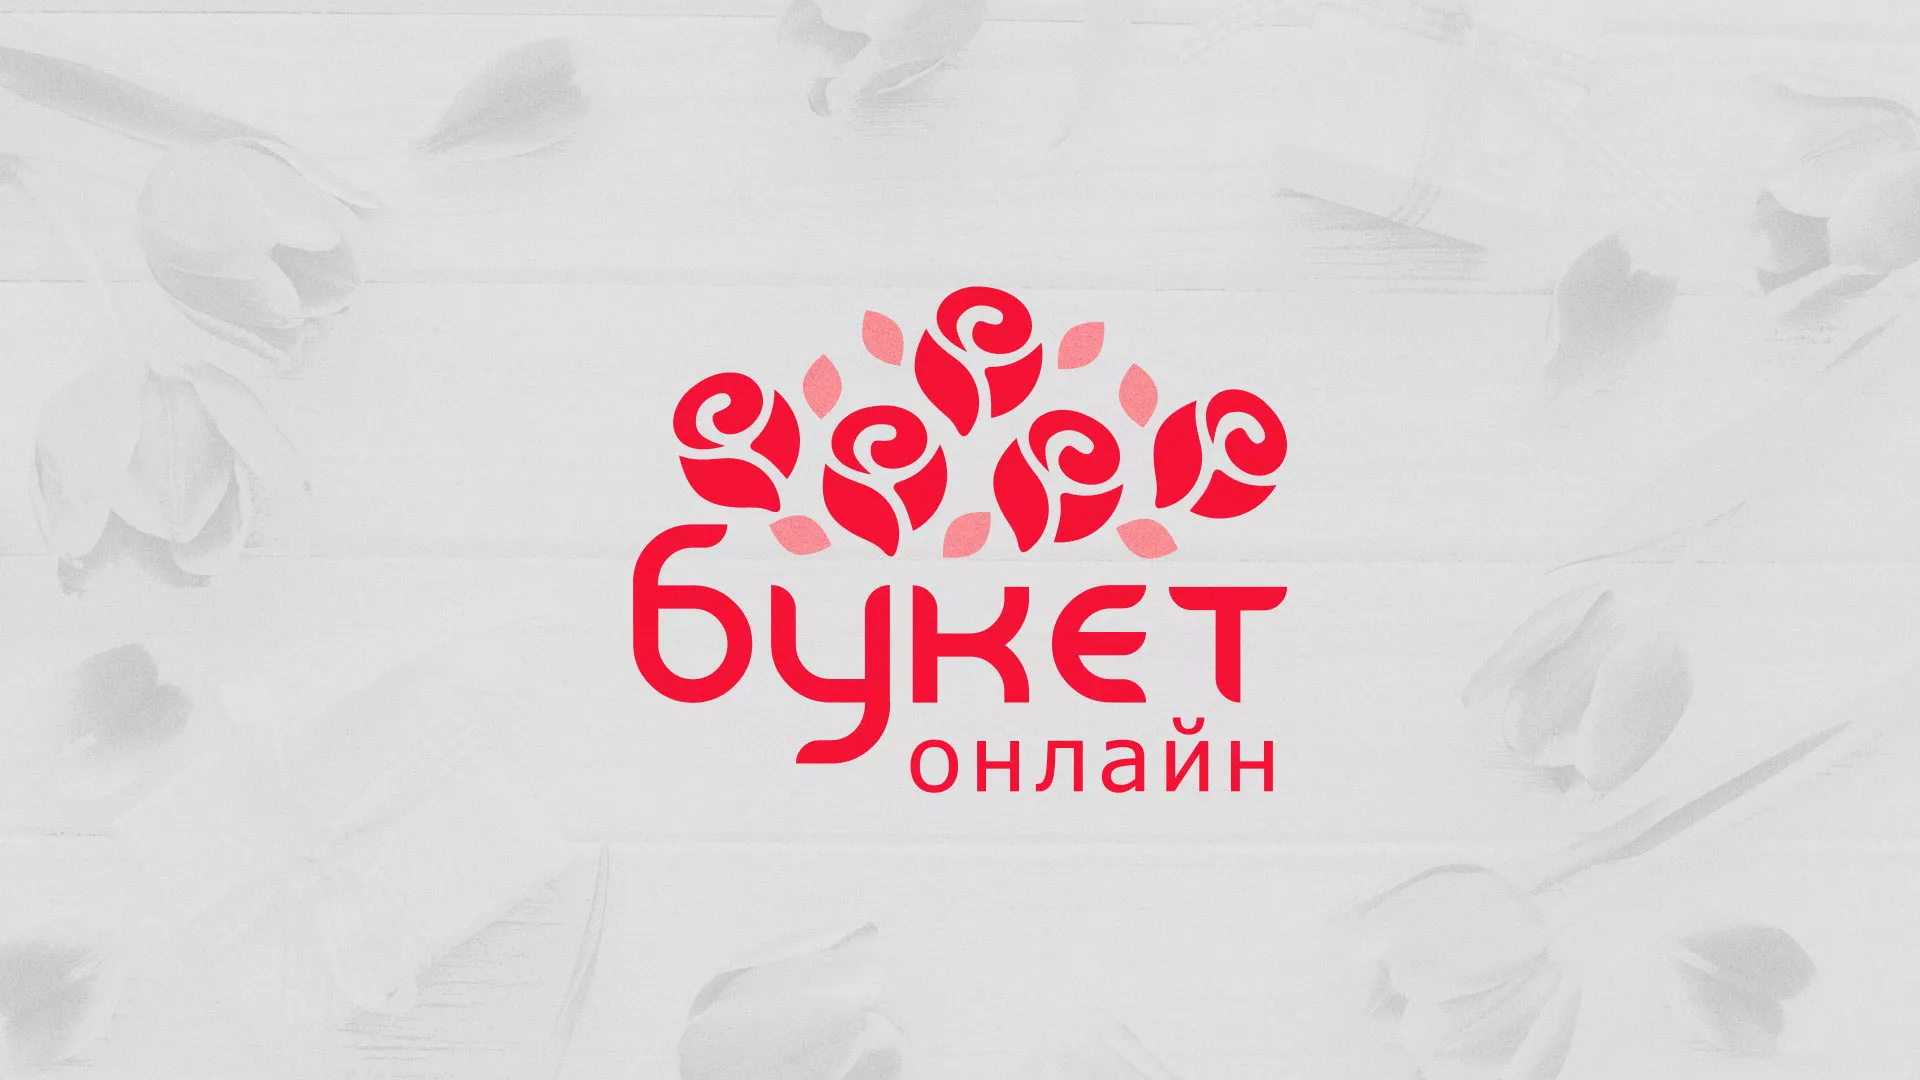 Создание интернет-магазина «Букет-онлайн» по цветам в Морозовске